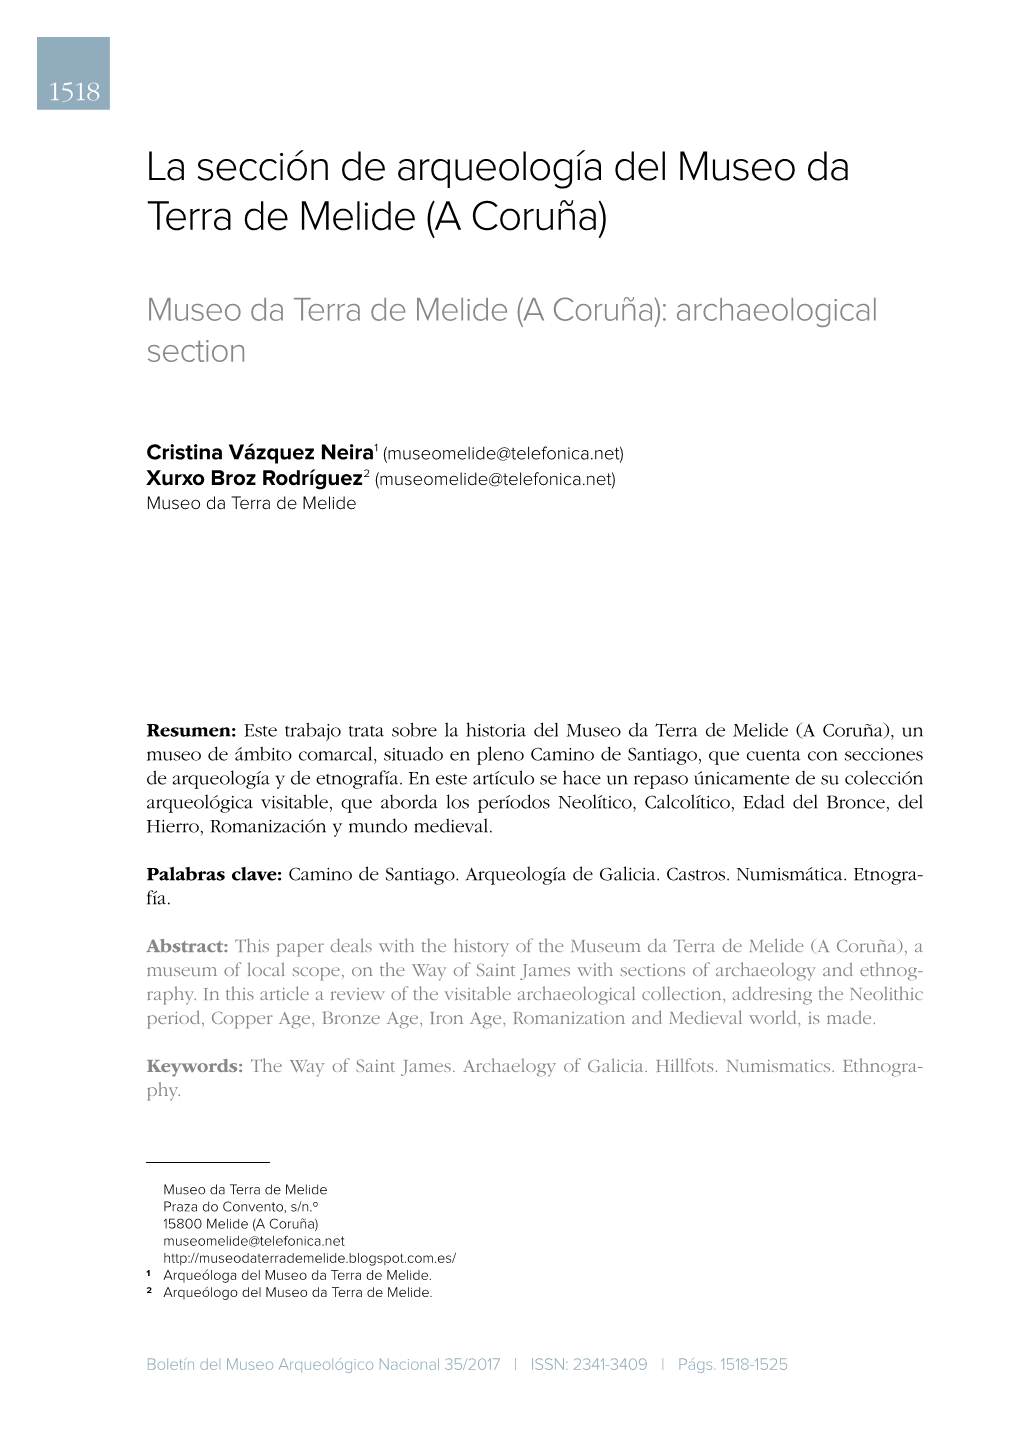 La Sección De Arqueología Del Museo Da Terra De Melide (A Coruña)